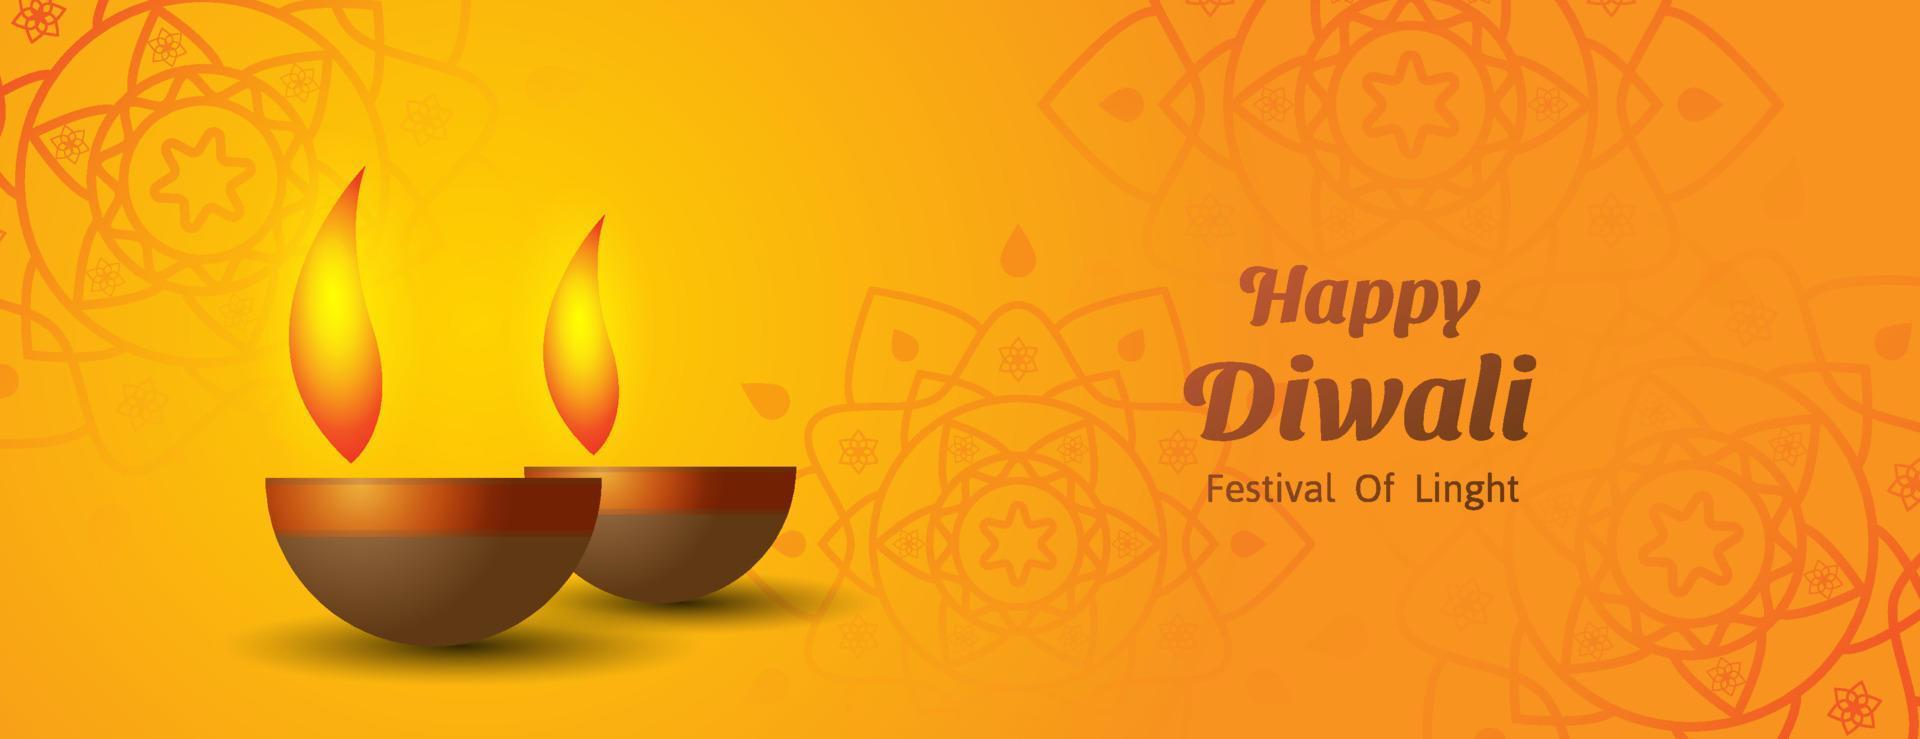 glücklicher Diwali-Fahnenhintergrund. Festival des Lichtbanner-Designs. Vektor-Illustration vektor